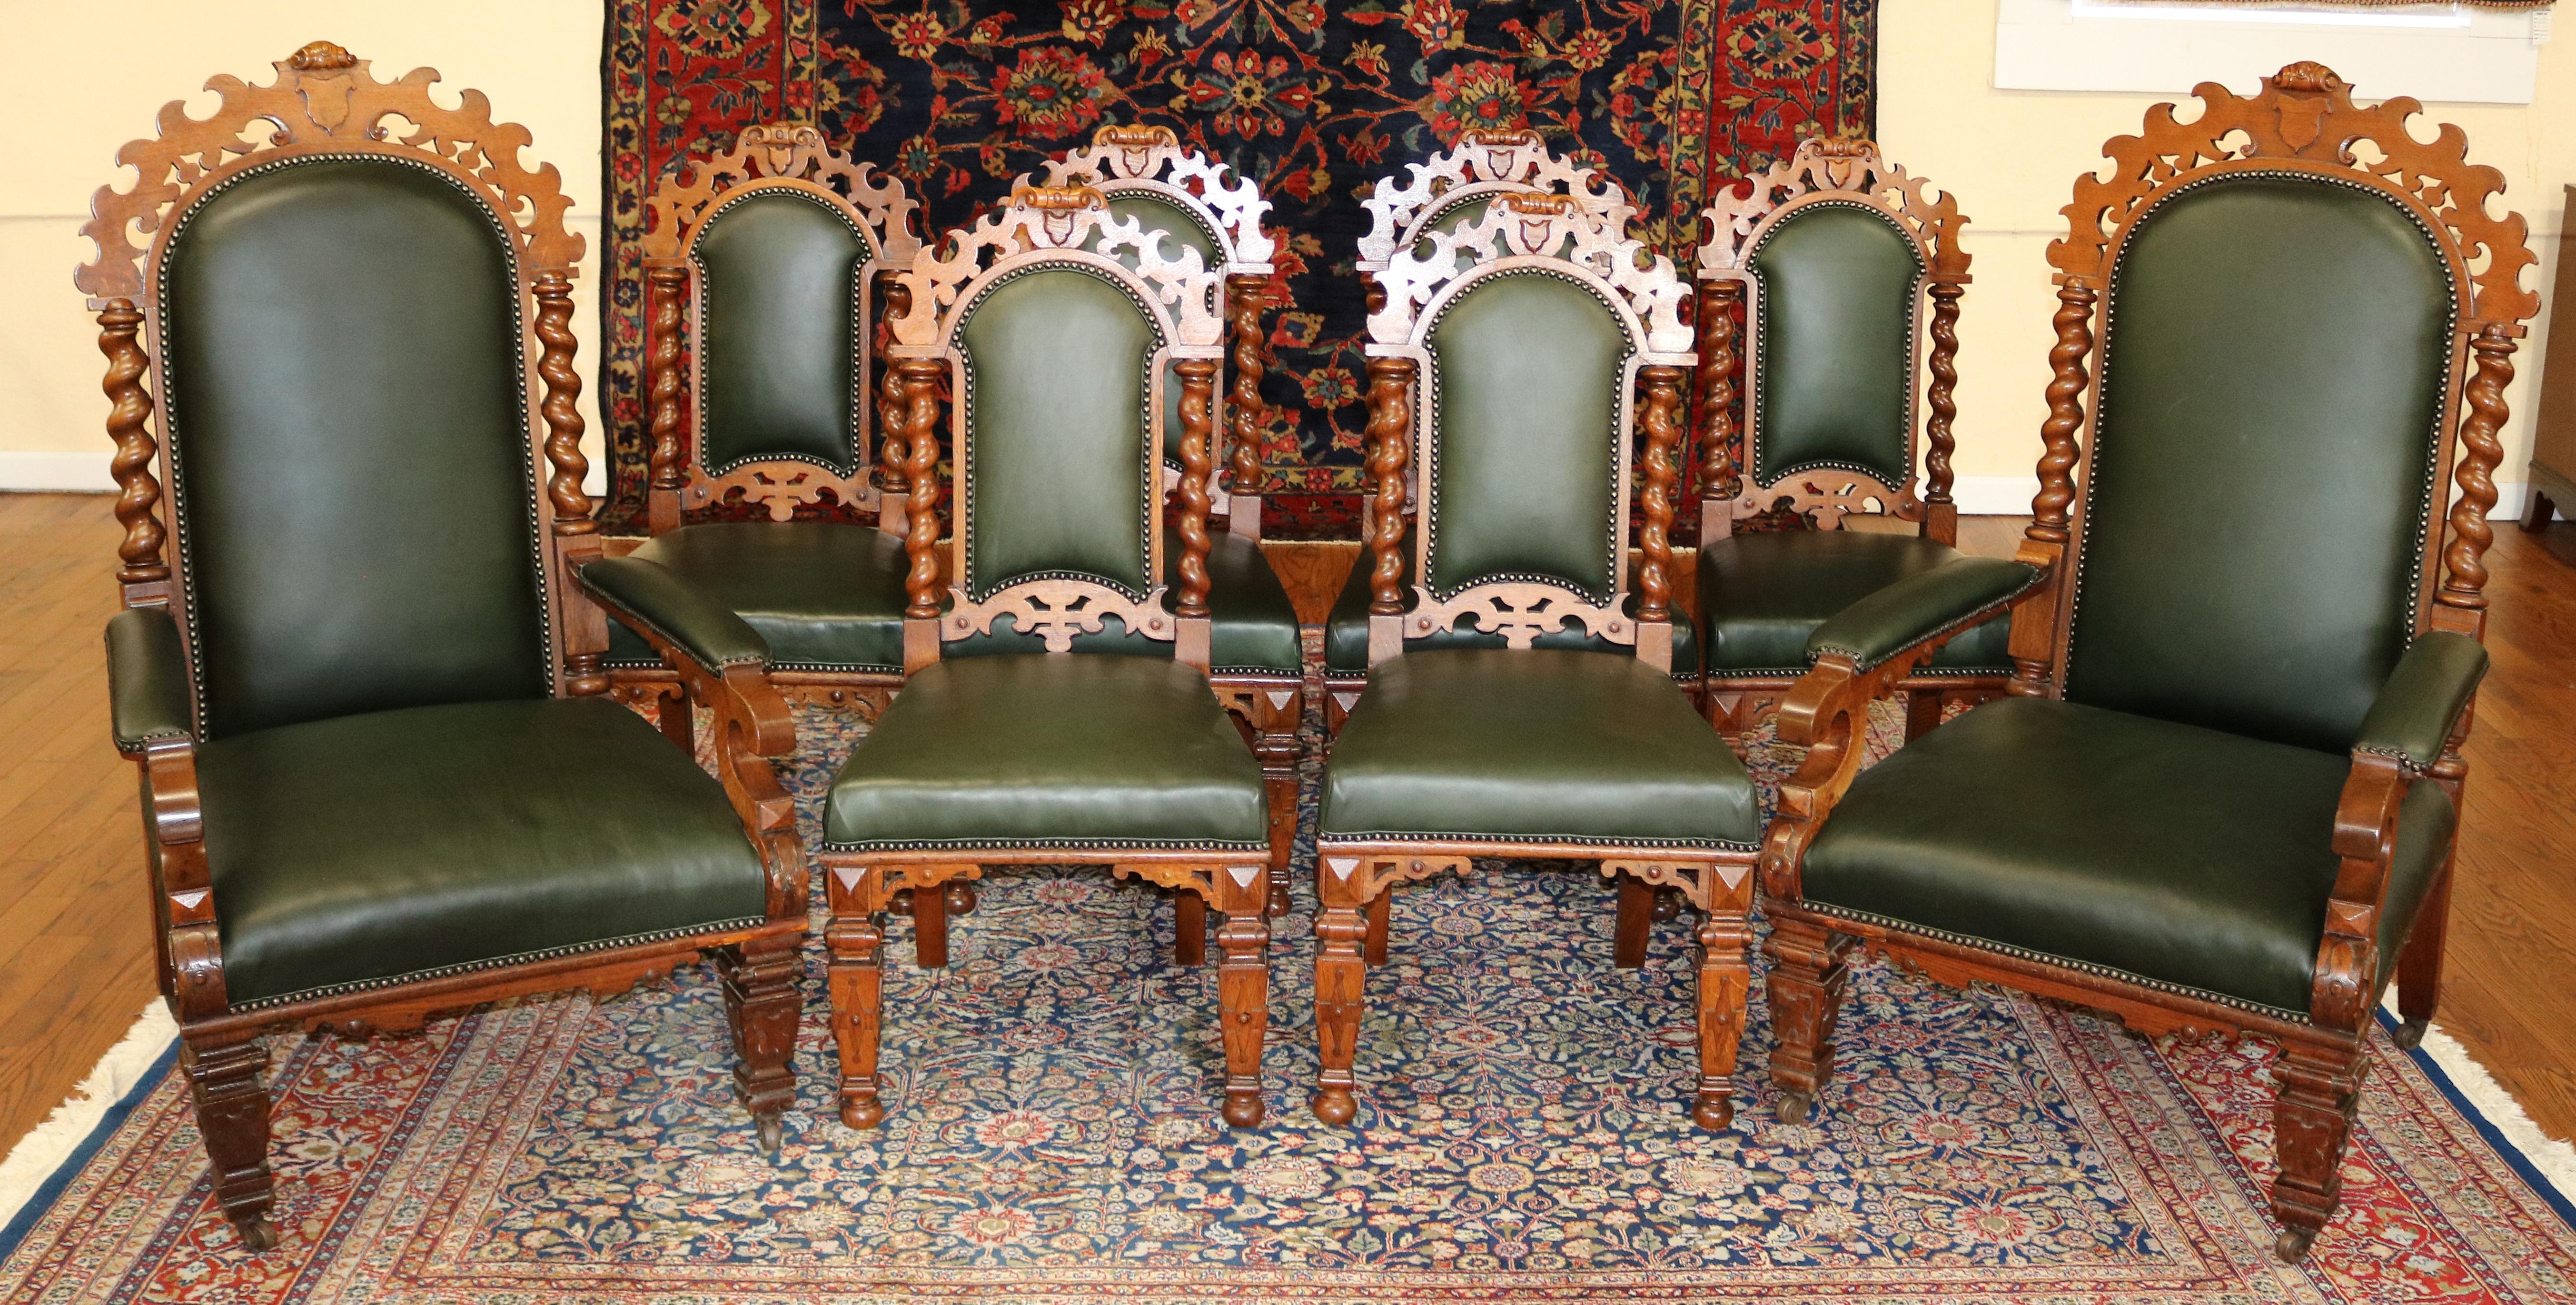 Ensemble de 8 chaises de salle à manger victoriennes du 19ème siècle en chêne torsadé et cuir vert

Dimensions : Fauteuils - 49.25